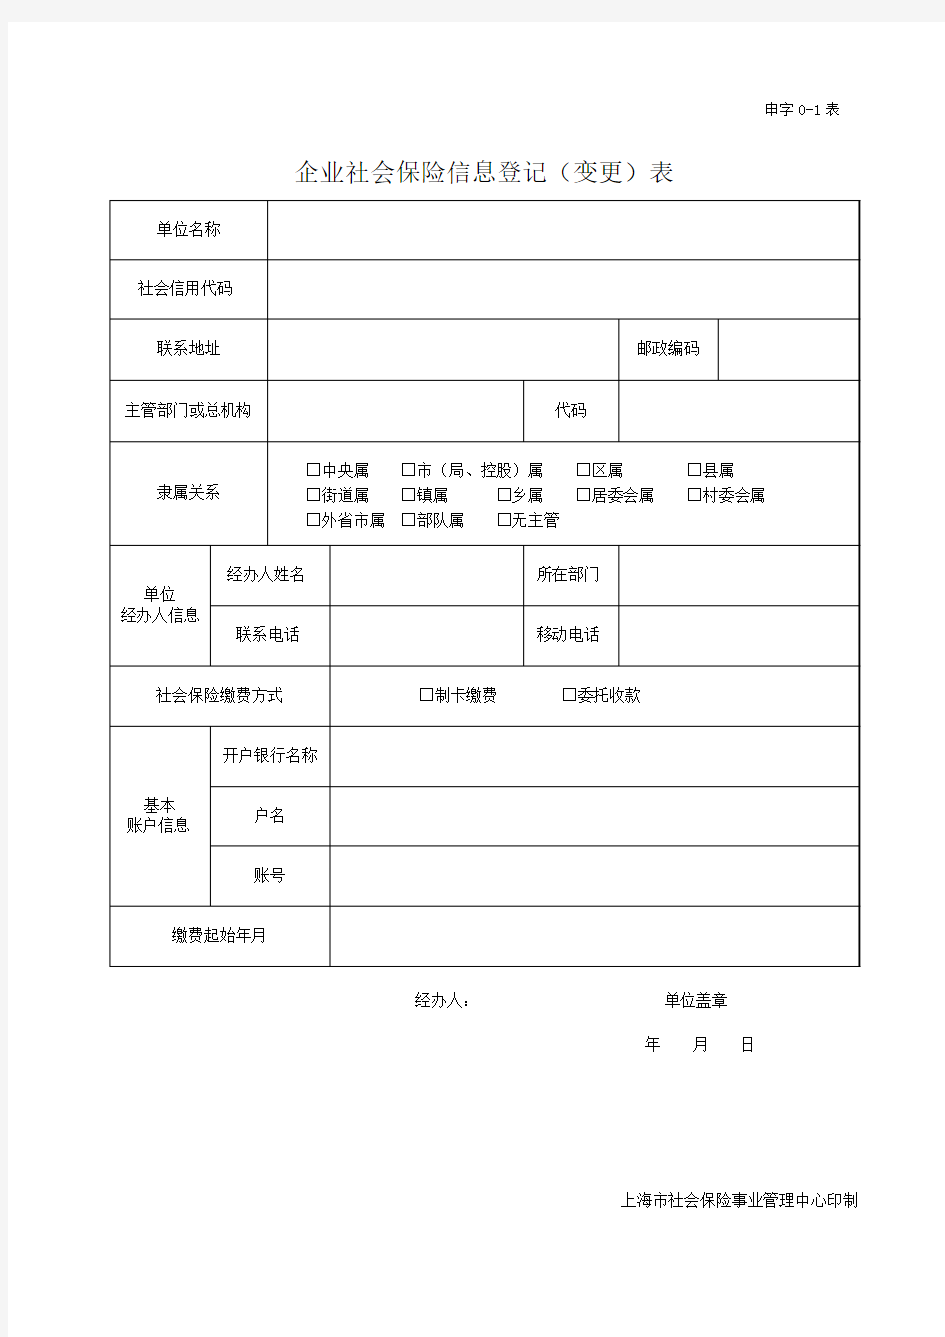 企业社会保险信息登记(变更)表_上海